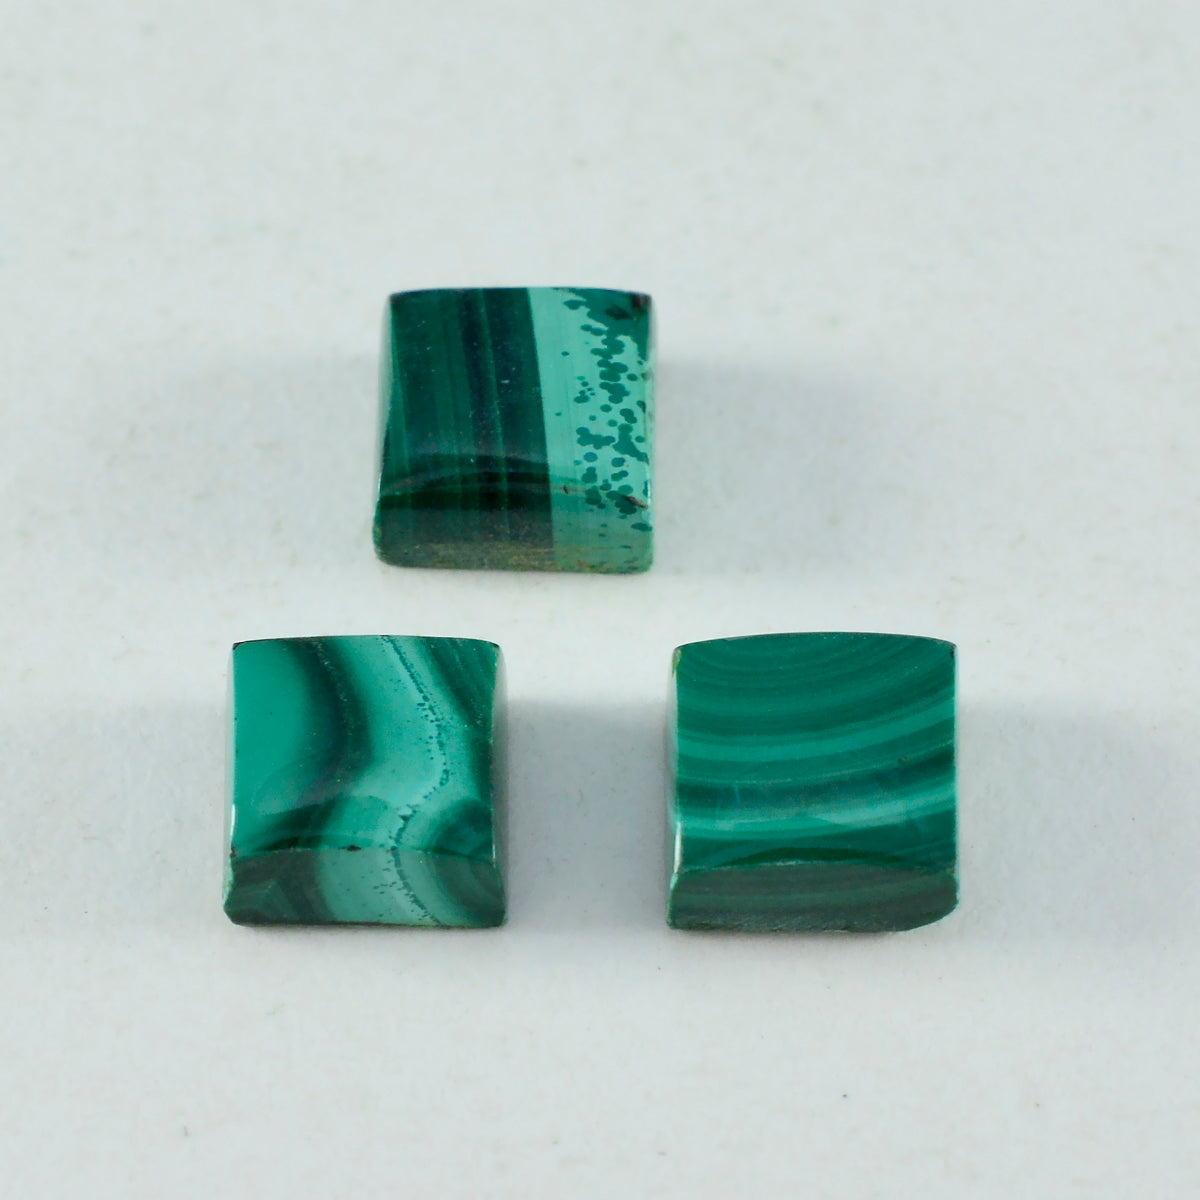 Riyogems 1 pc cabochon malachite verte 15x15 mm forme carrée pierres précieuses de bonne qualité